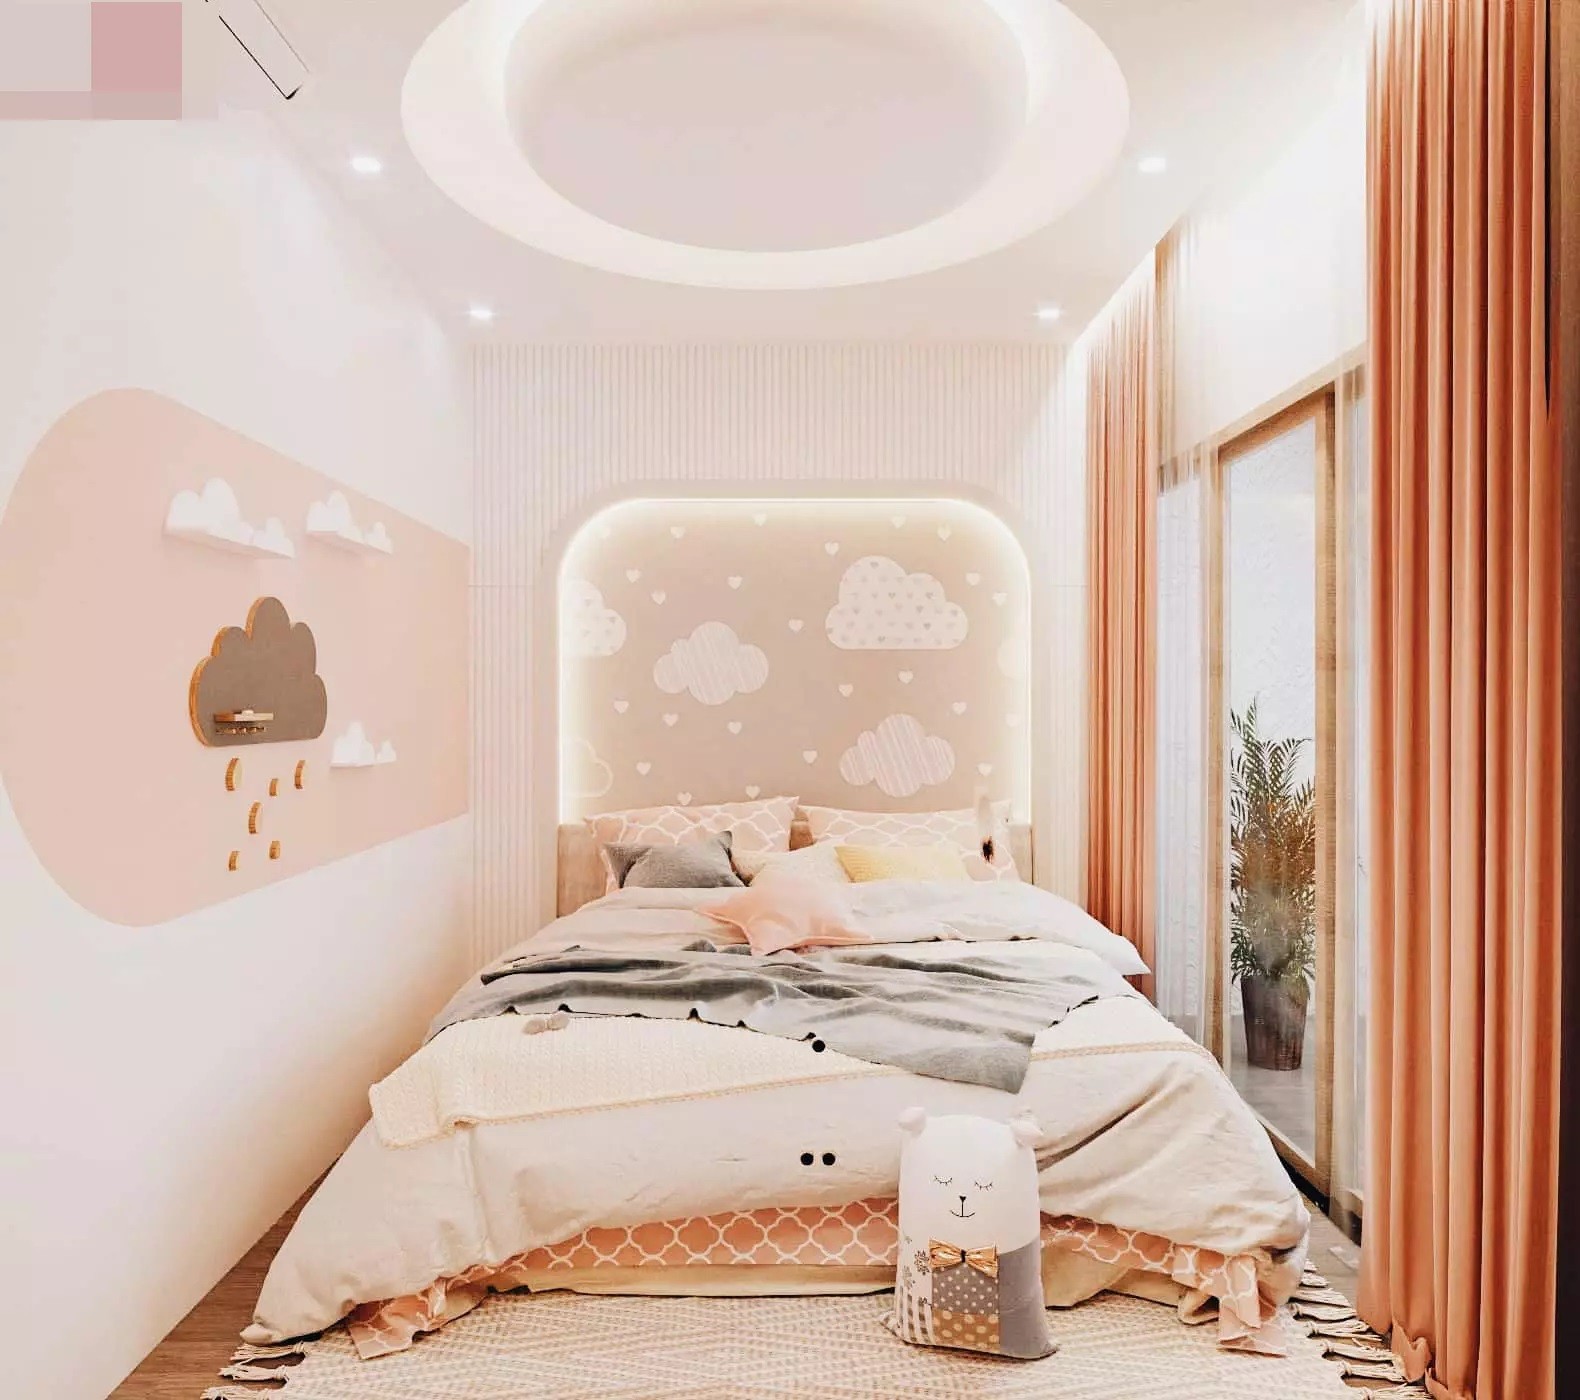 
Phòng ngủ với gam màu hồng pastel cực kỳ dễ thương dành cho bé gái
